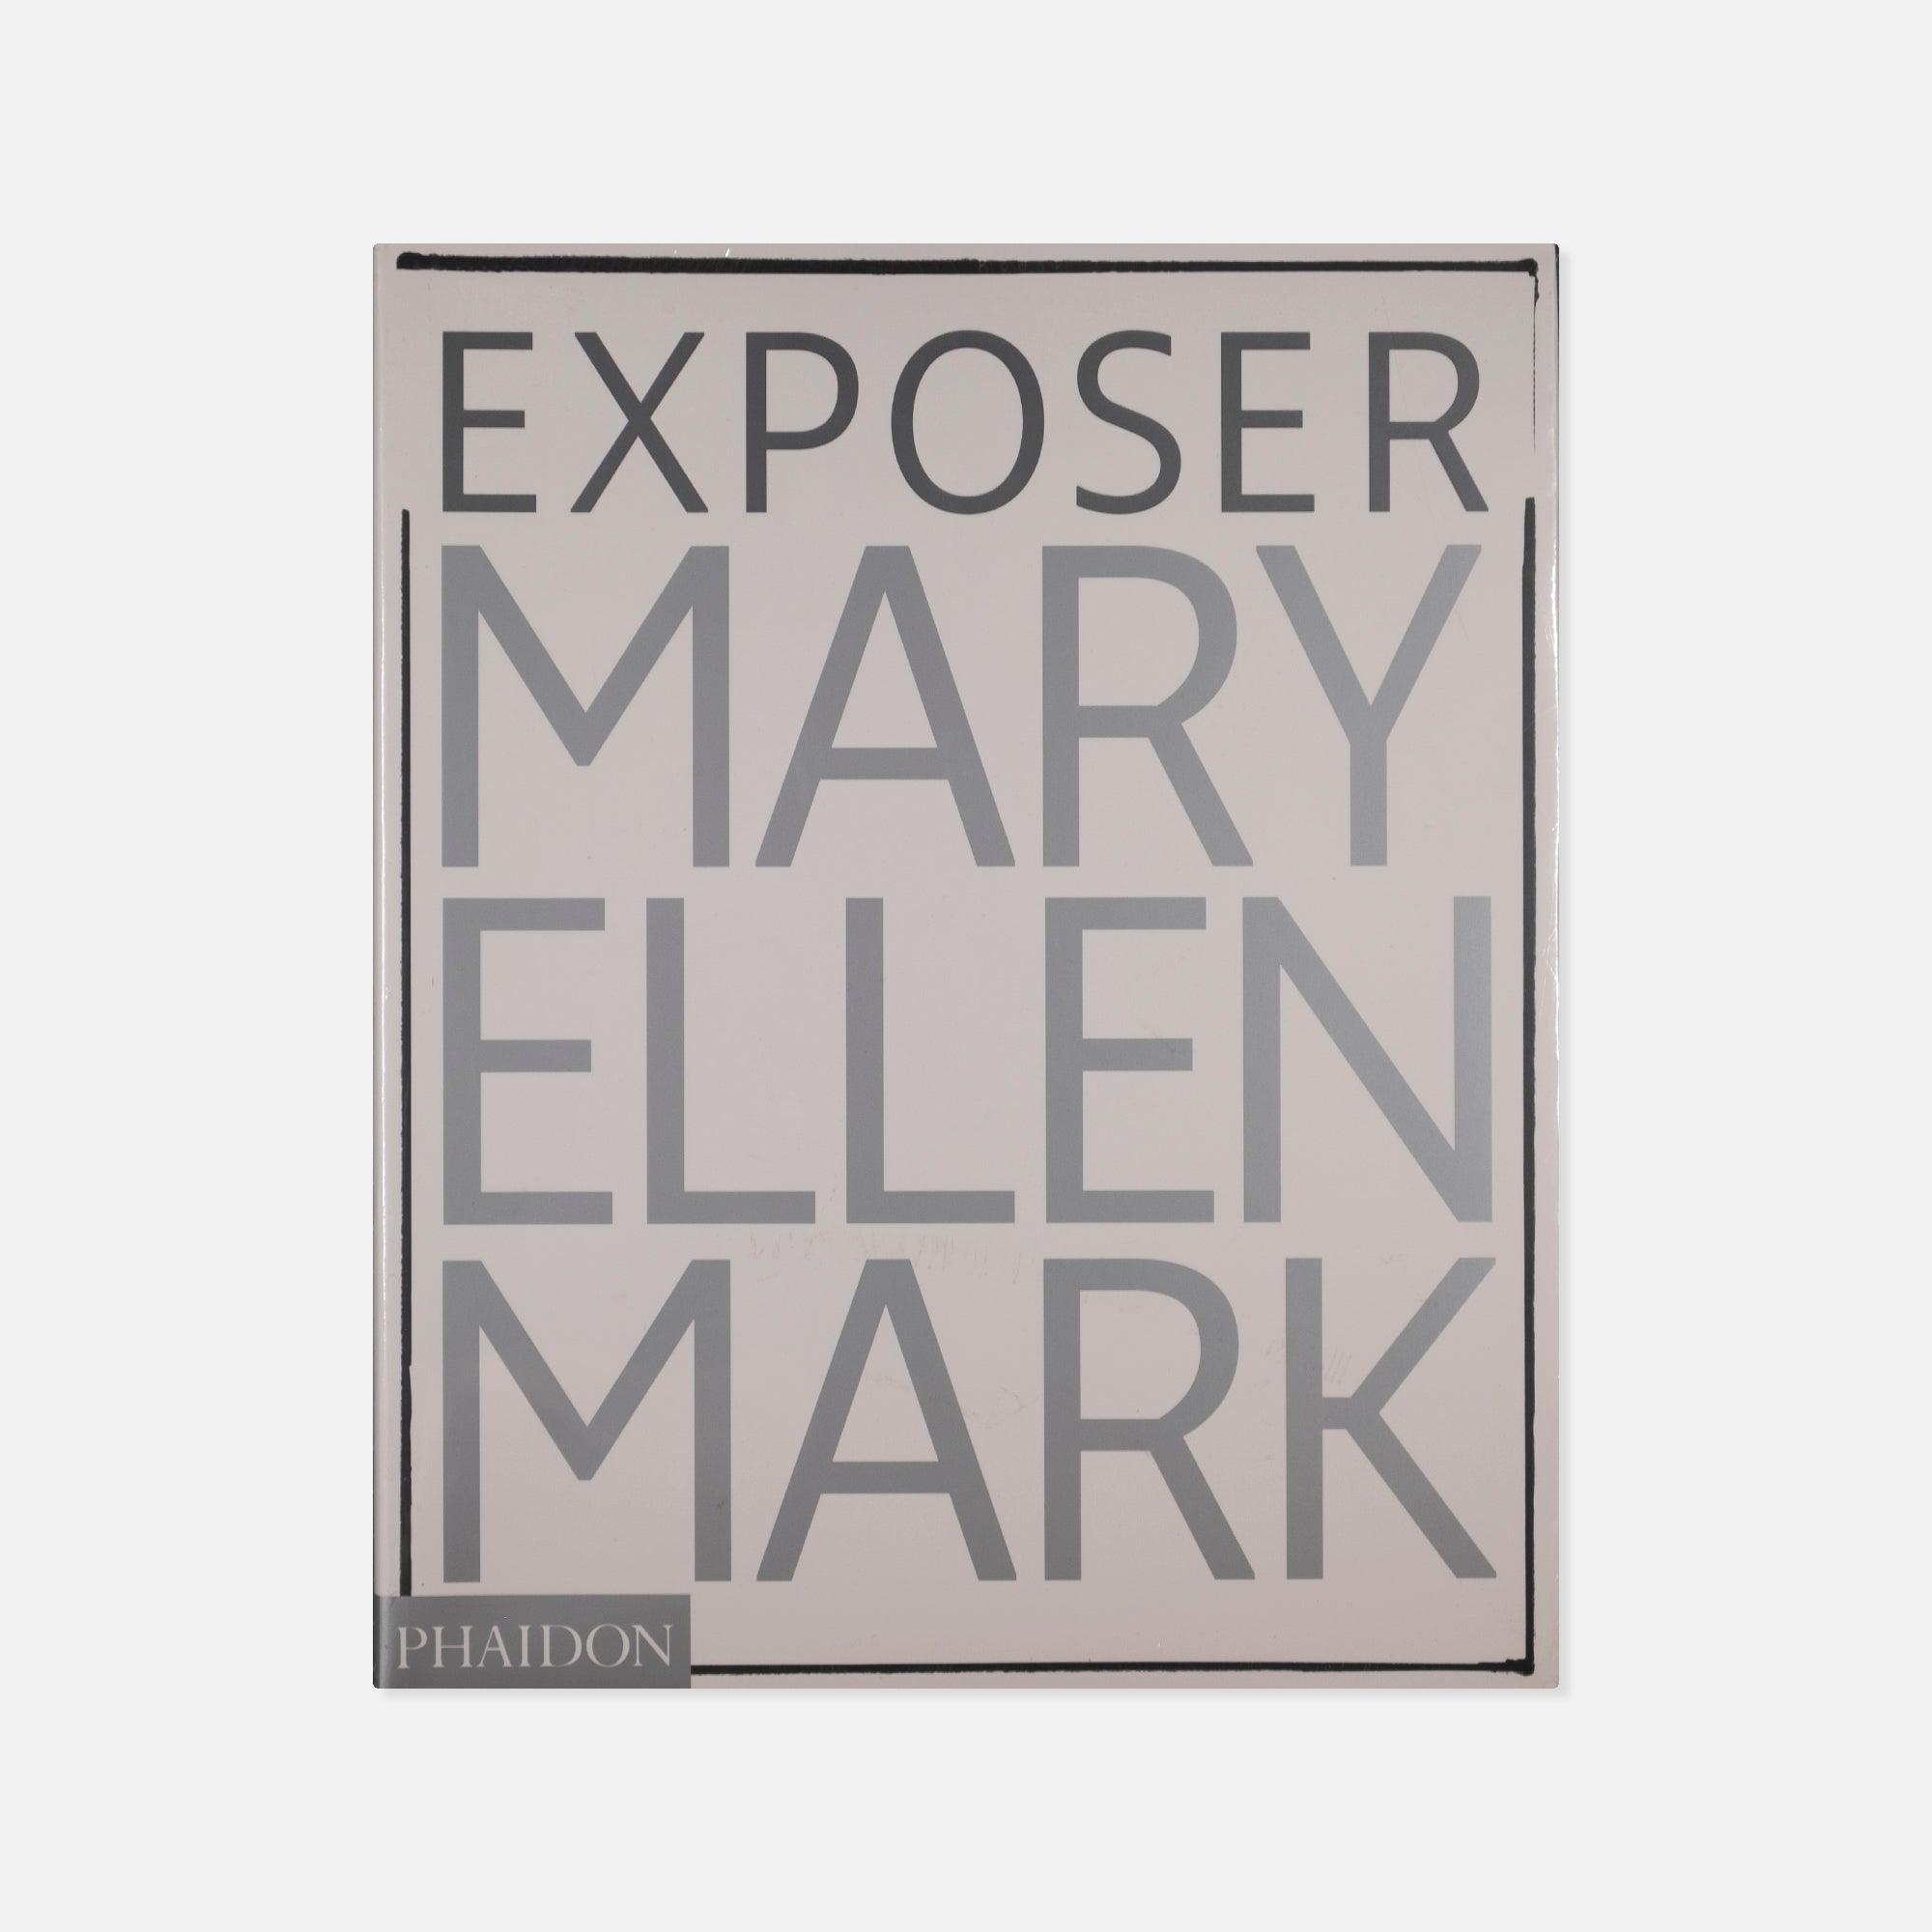 Mary Ellen Mark — Exposer (Exposure)